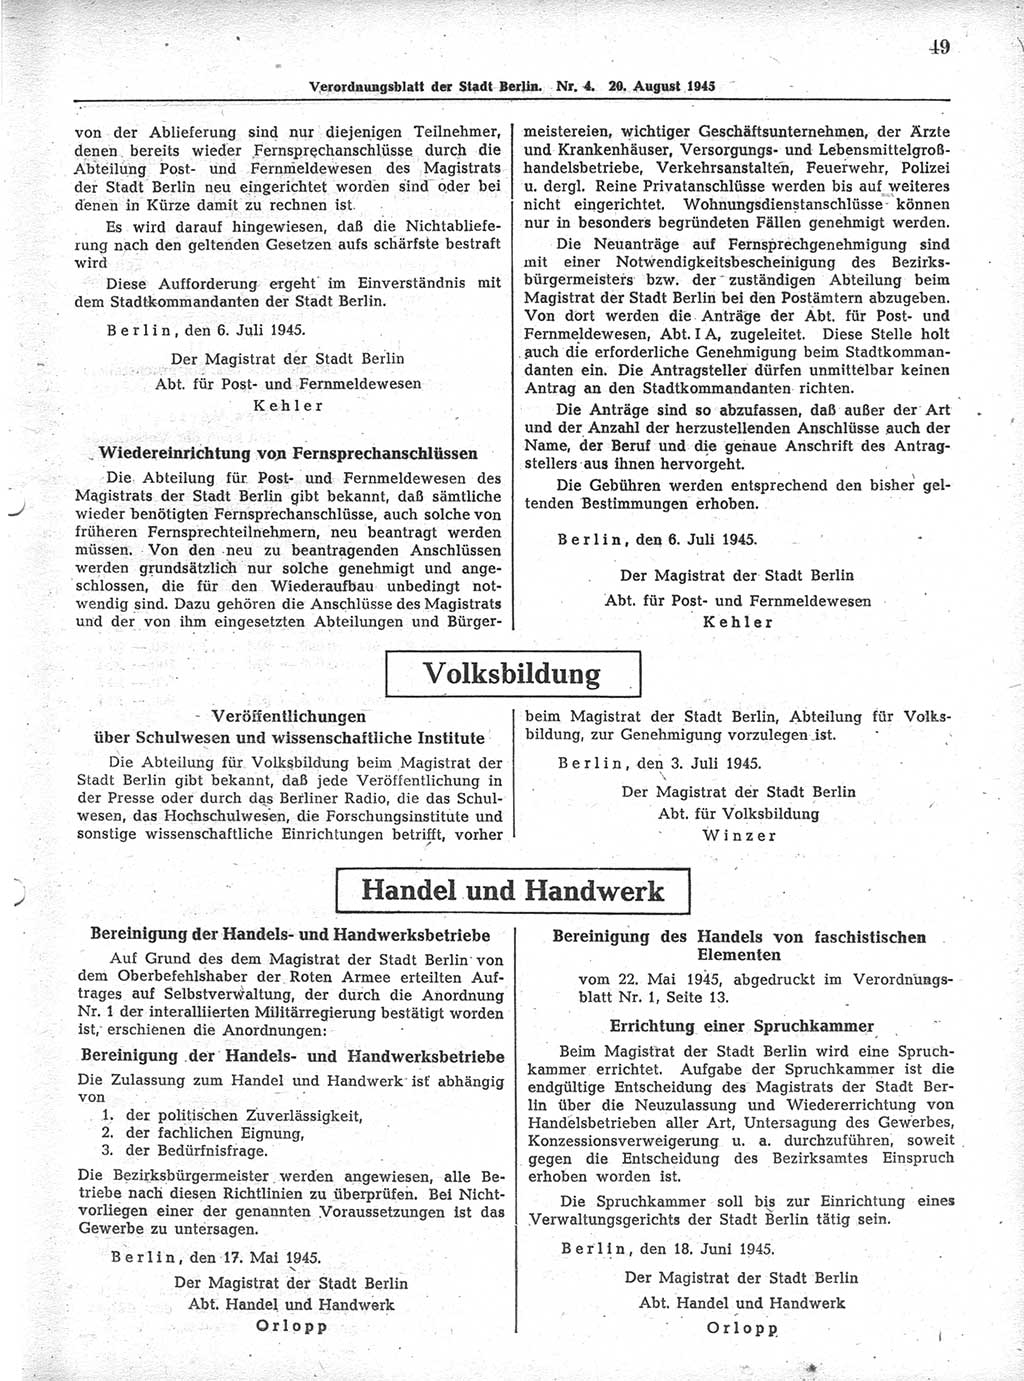 Verordnungsblatt (VOBl.) der Stadt Berlin 1945, Seite 49 (VOBl. Bln. 1945, S. 49)